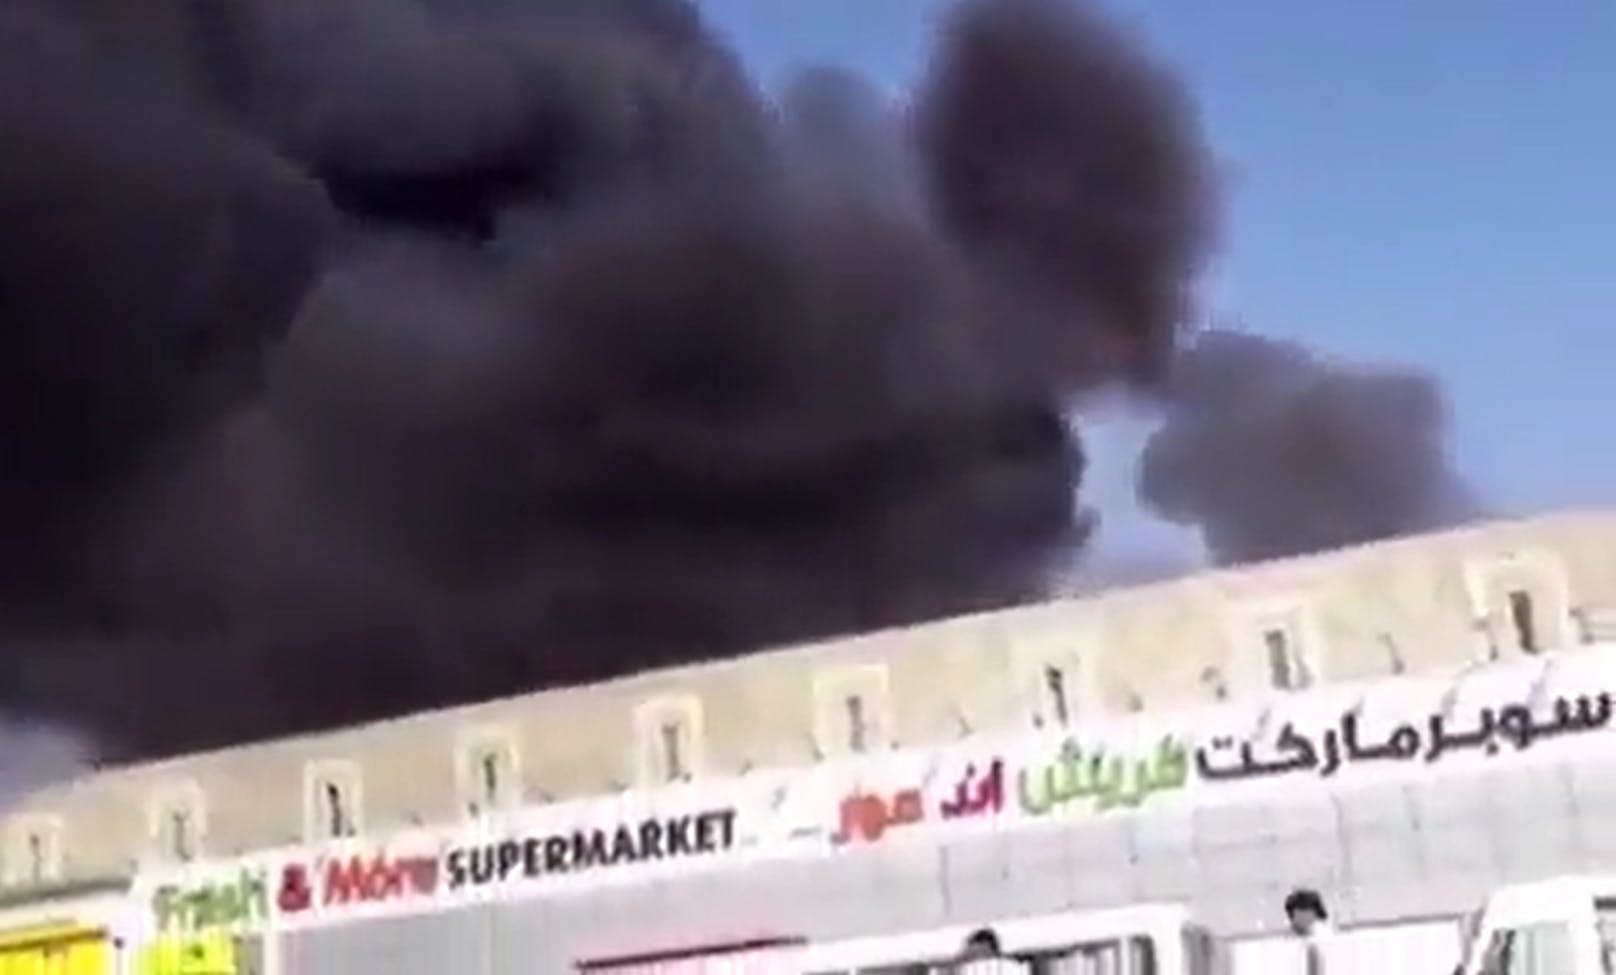 In Abu Dhabi explodierten mehrere Öltanker.